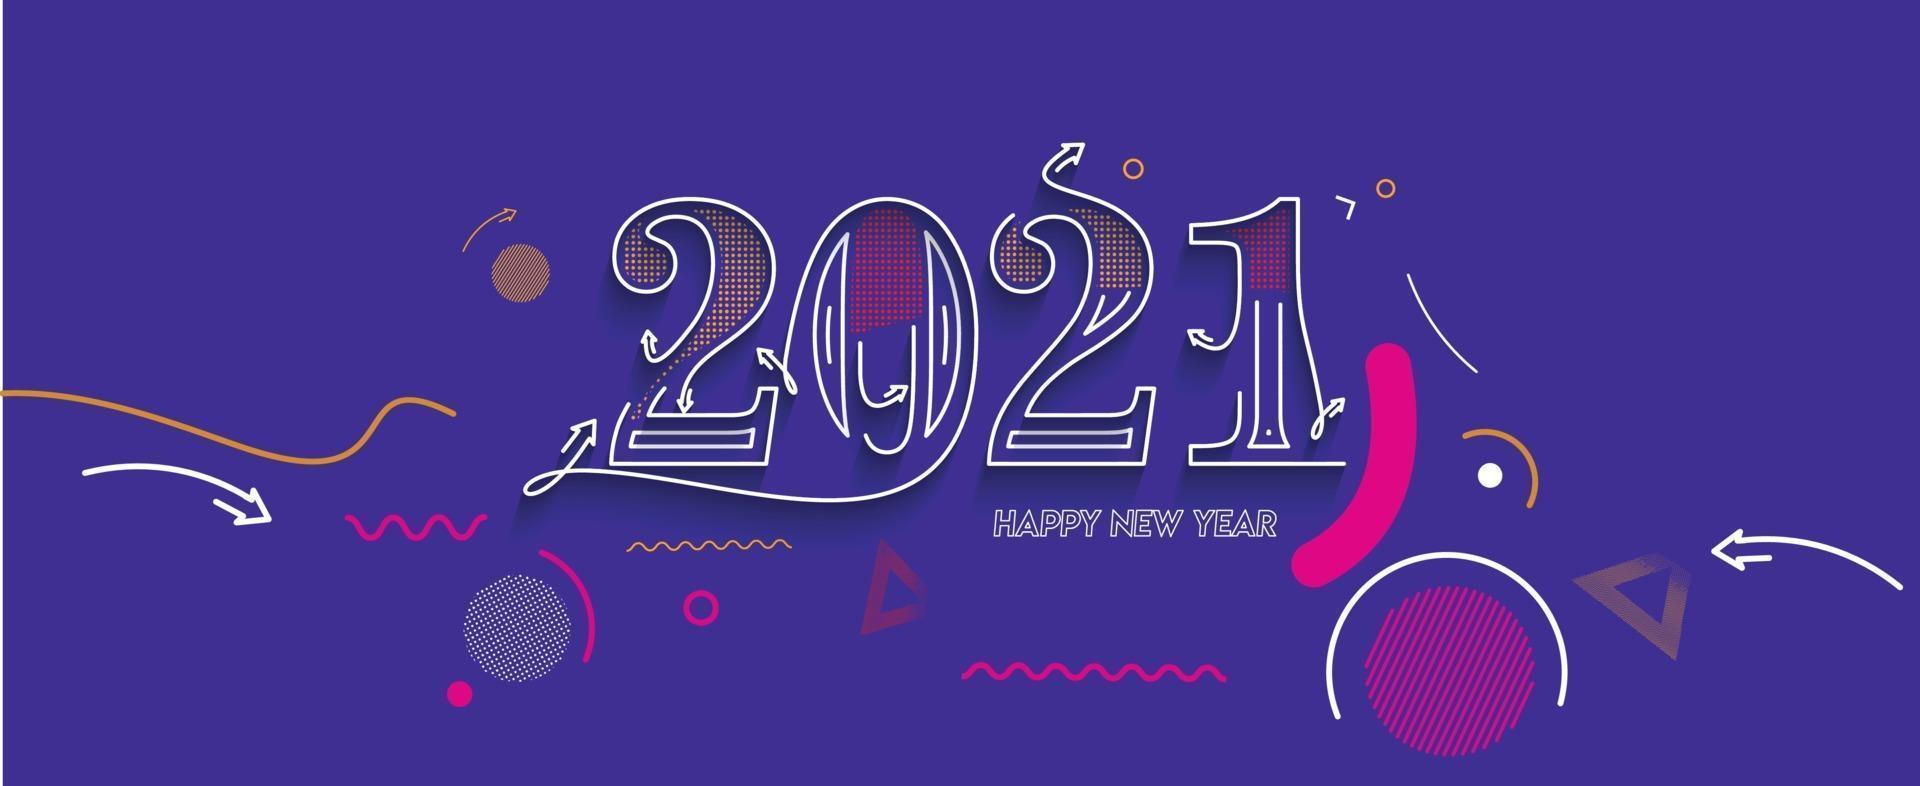 bannière de typographie de texte coloré bonne année 2021 vecteur